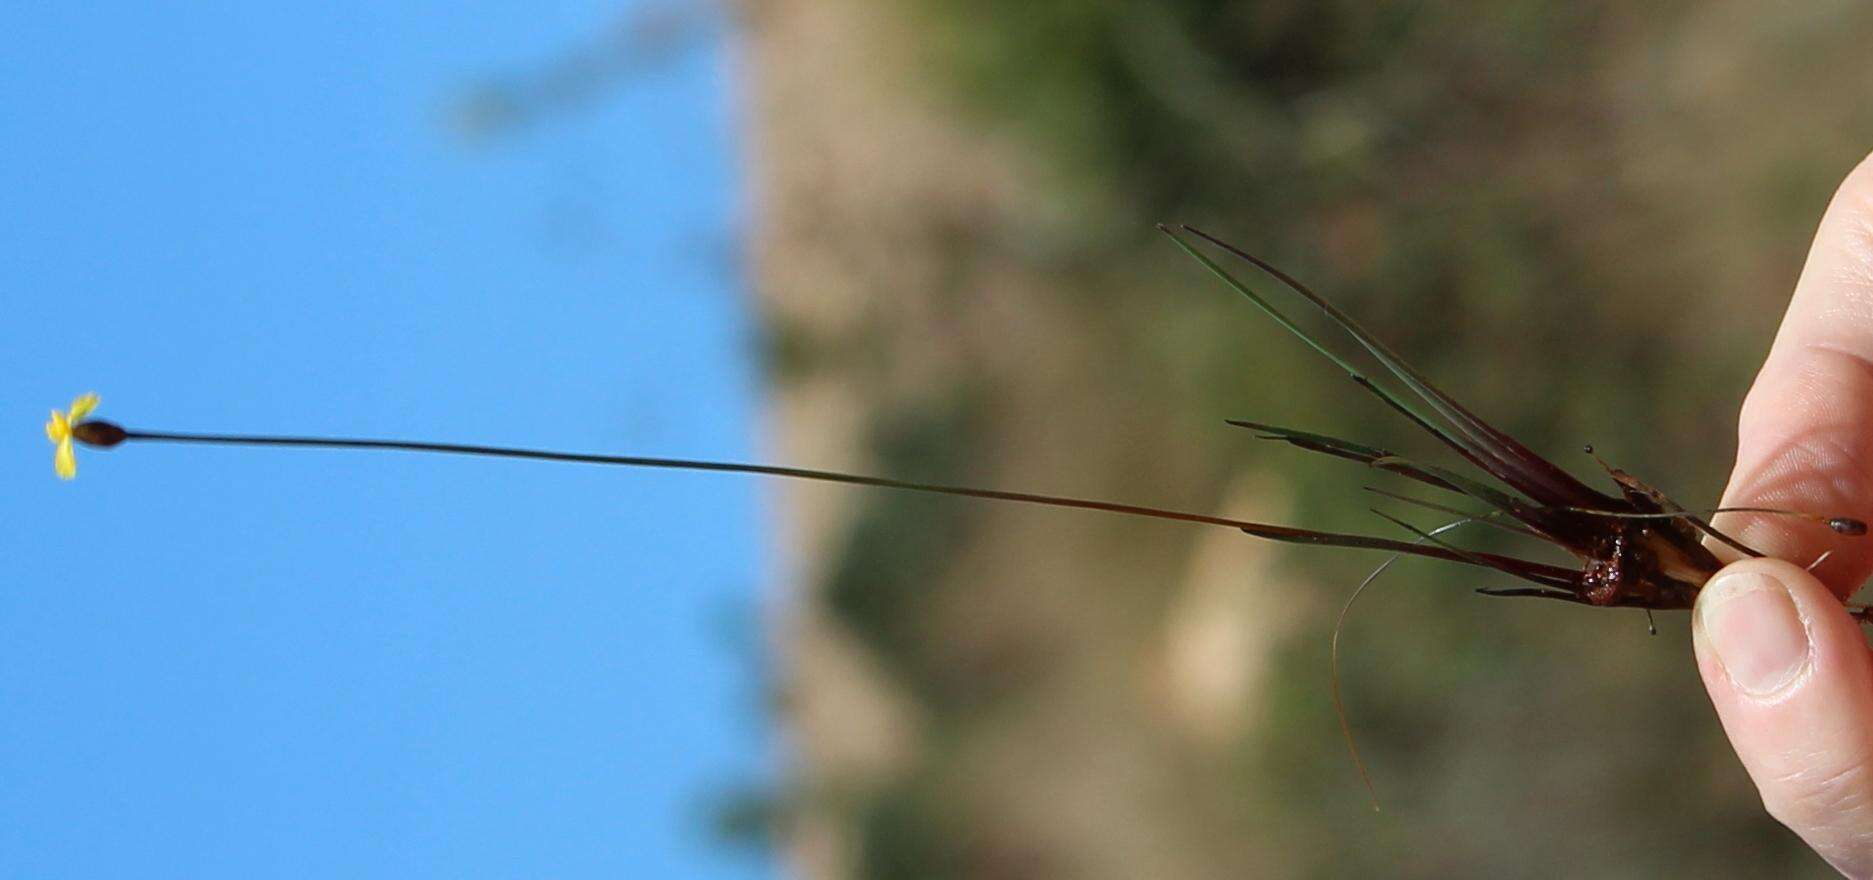 Sivun Xyris capensis Thunb. kuva